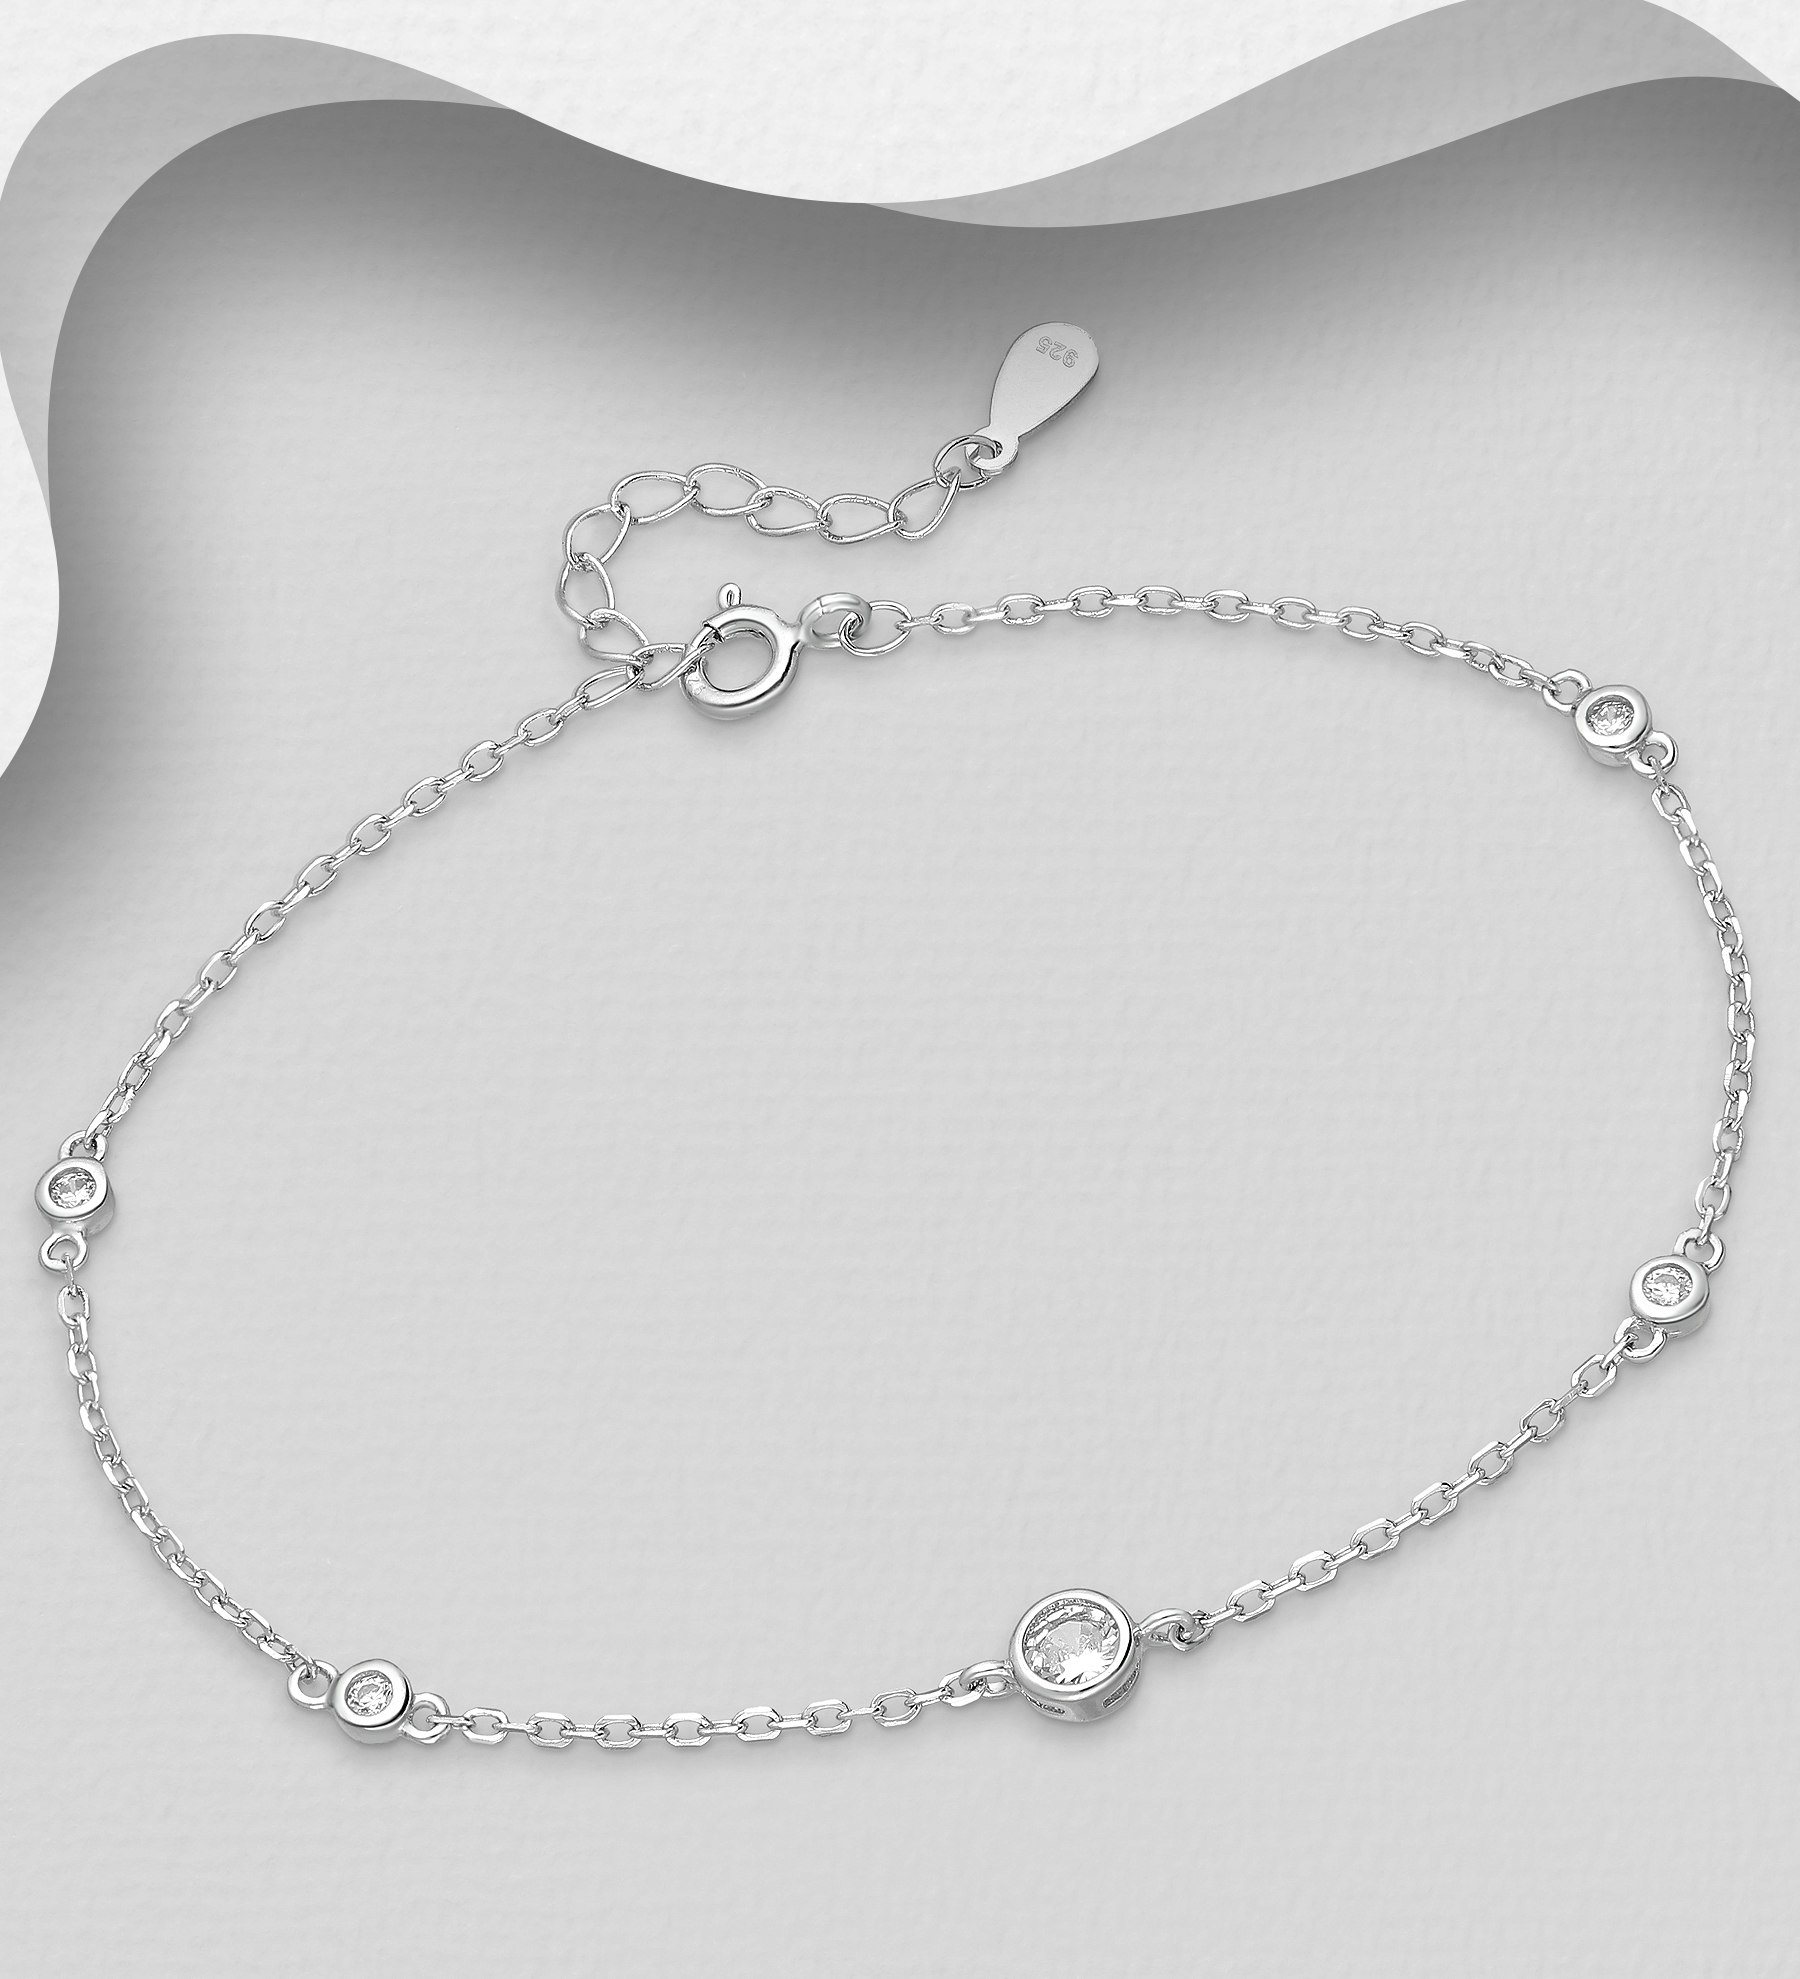 Silverarmband med runda, glittrande cubic zirkonia stenar - fint armband till tjej/ dam i äkta 925 sterling silver